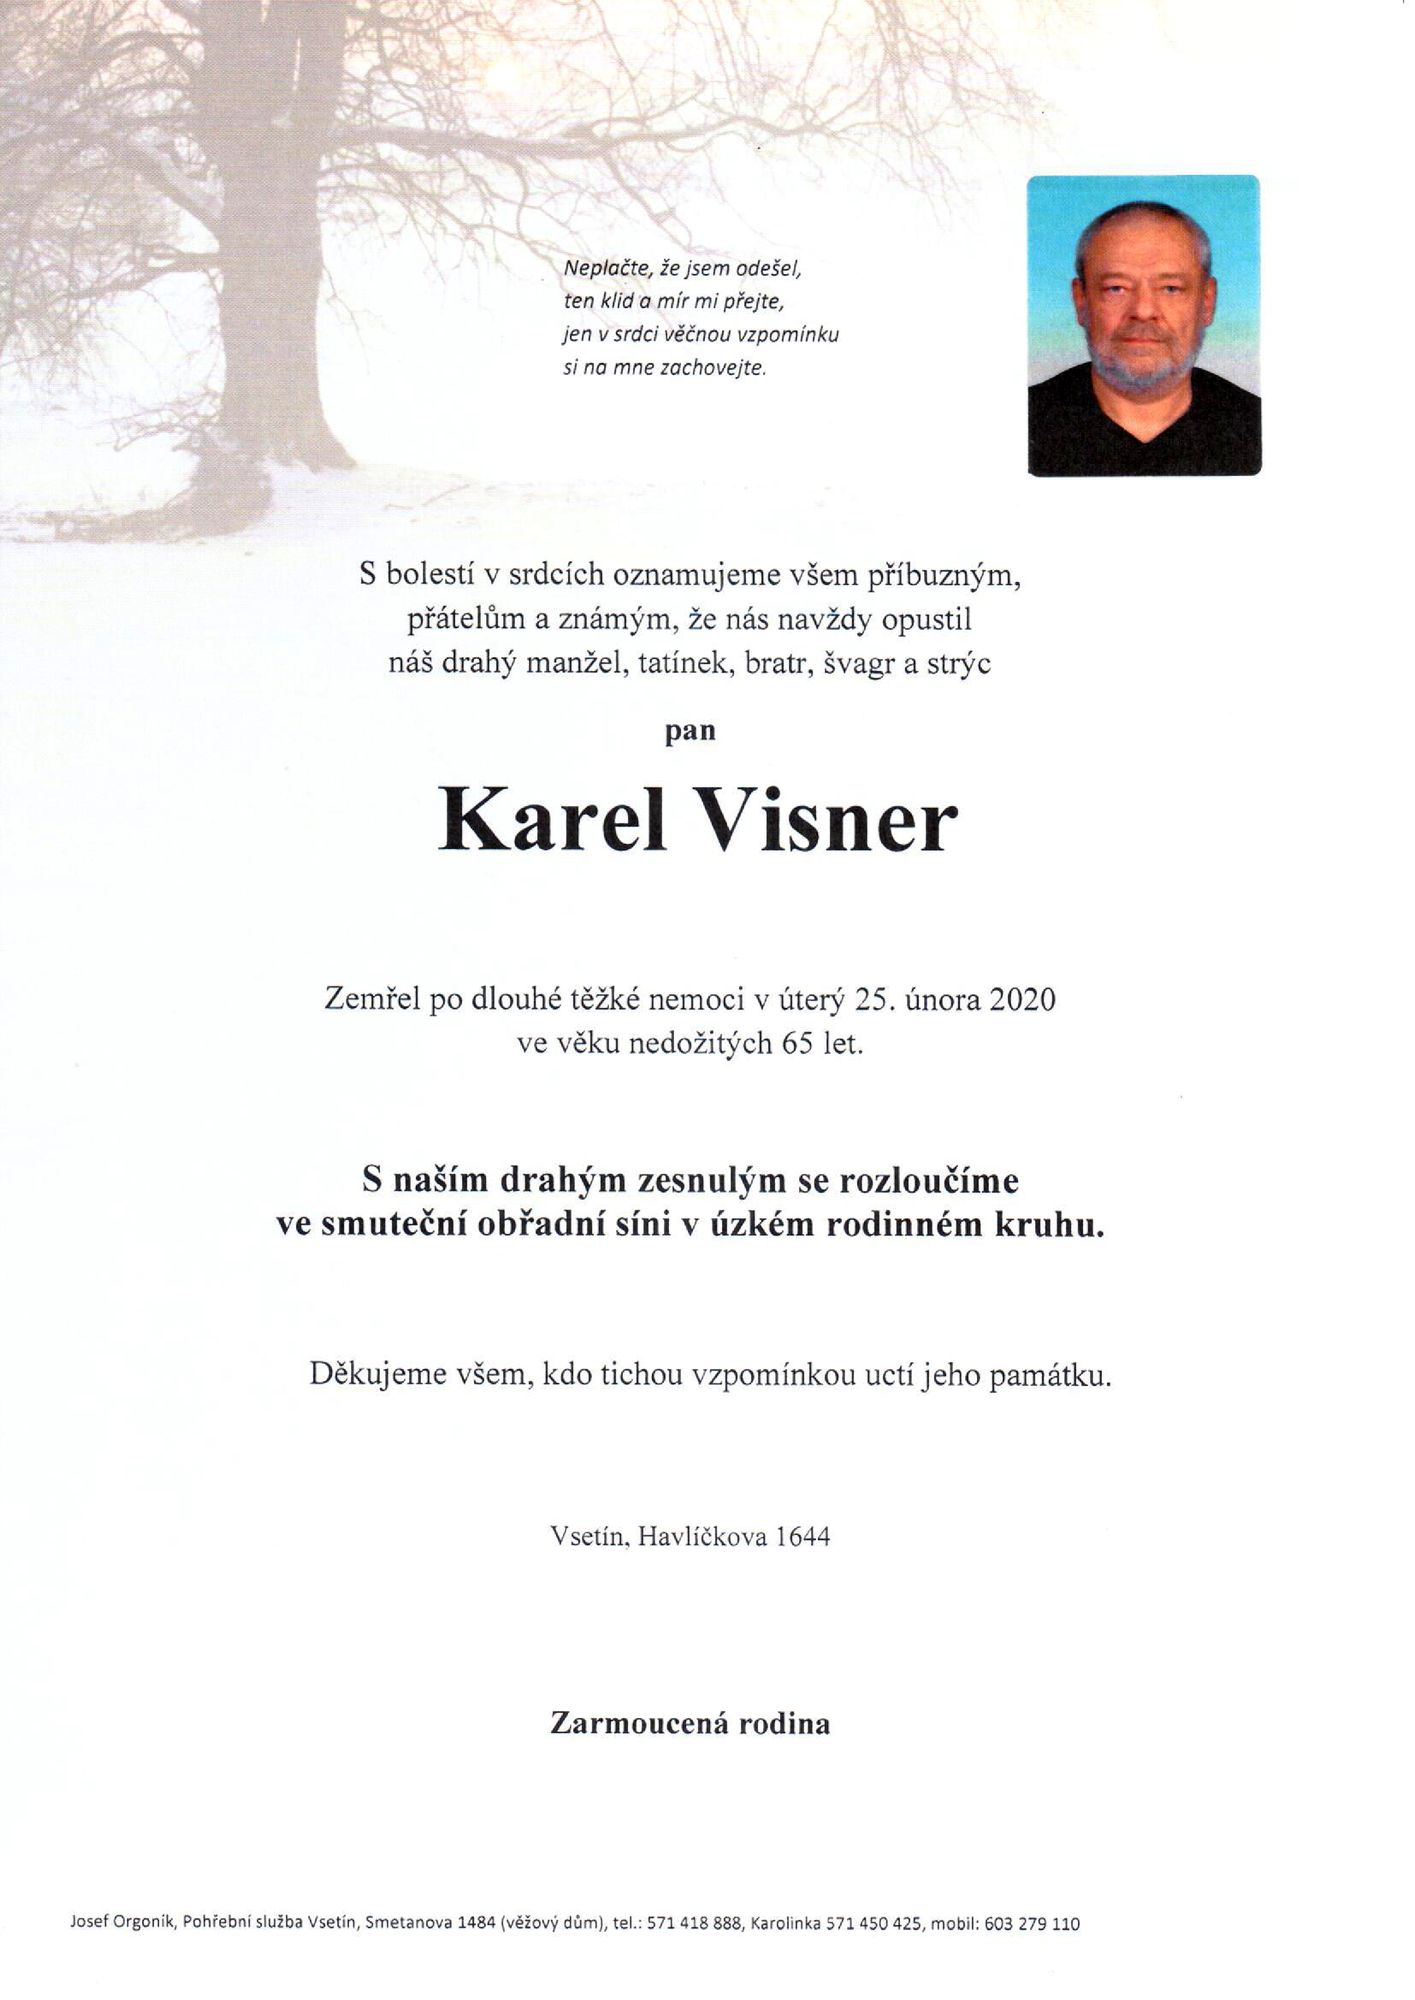 Karel Visner